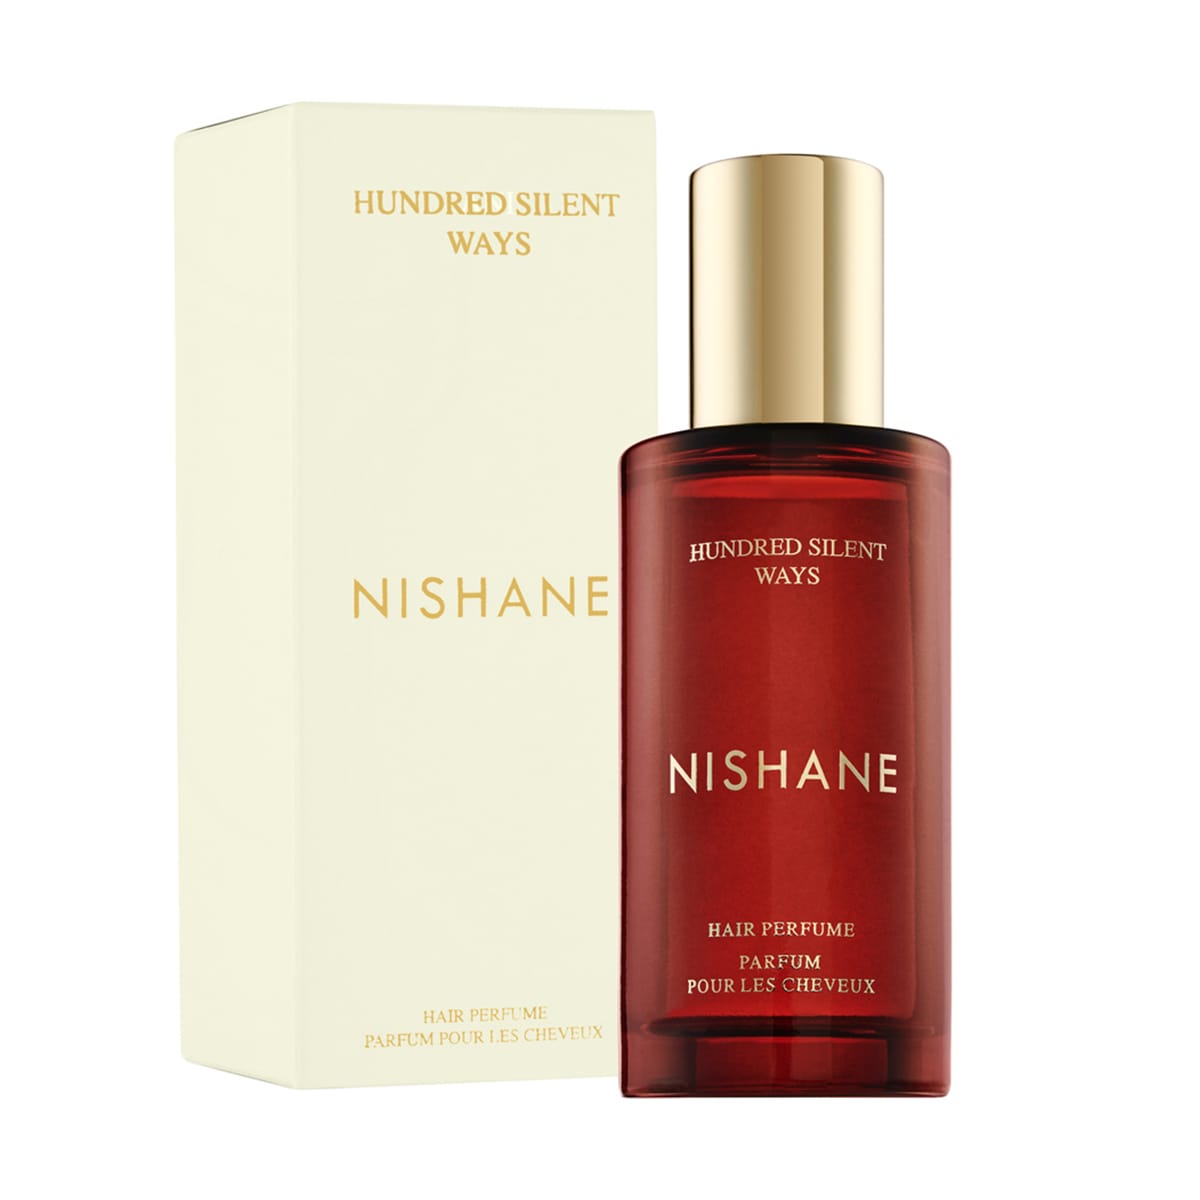 Hundred Silent Ways - Nishane - Hair Perfume 50ml